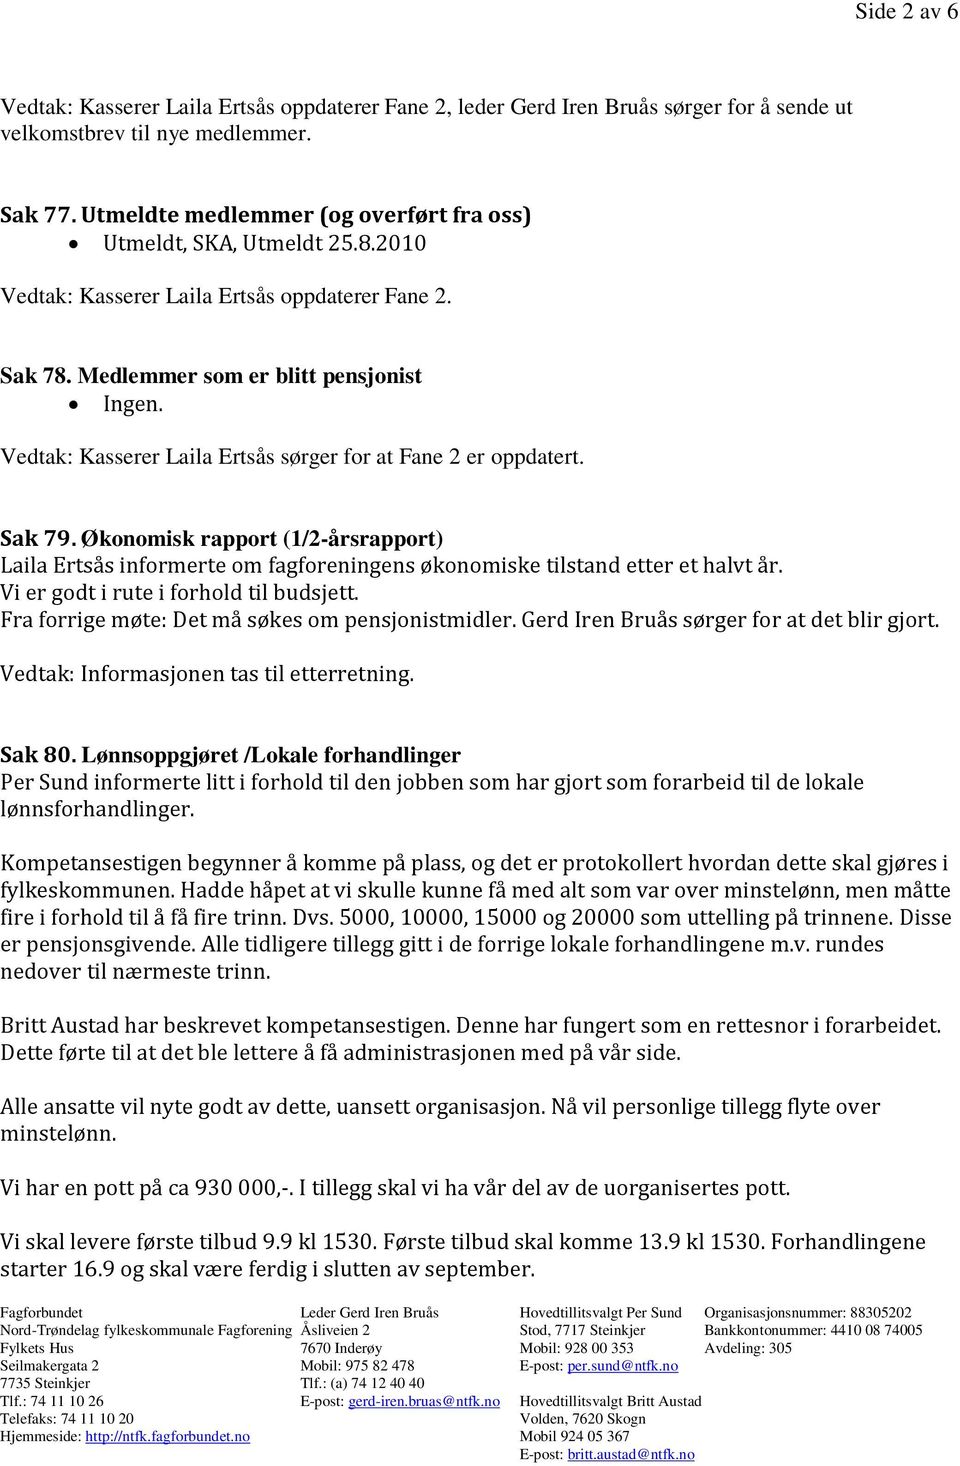 Vedtak: Kasserer Laila Ertsås sørger for at Fane 2 er oppdatert. Sak 79. Økonomisk rapport (1/2-årsrapport) Laila Ertsås informerte om fagforeningens økonomiske tilstand etter et halvt år.